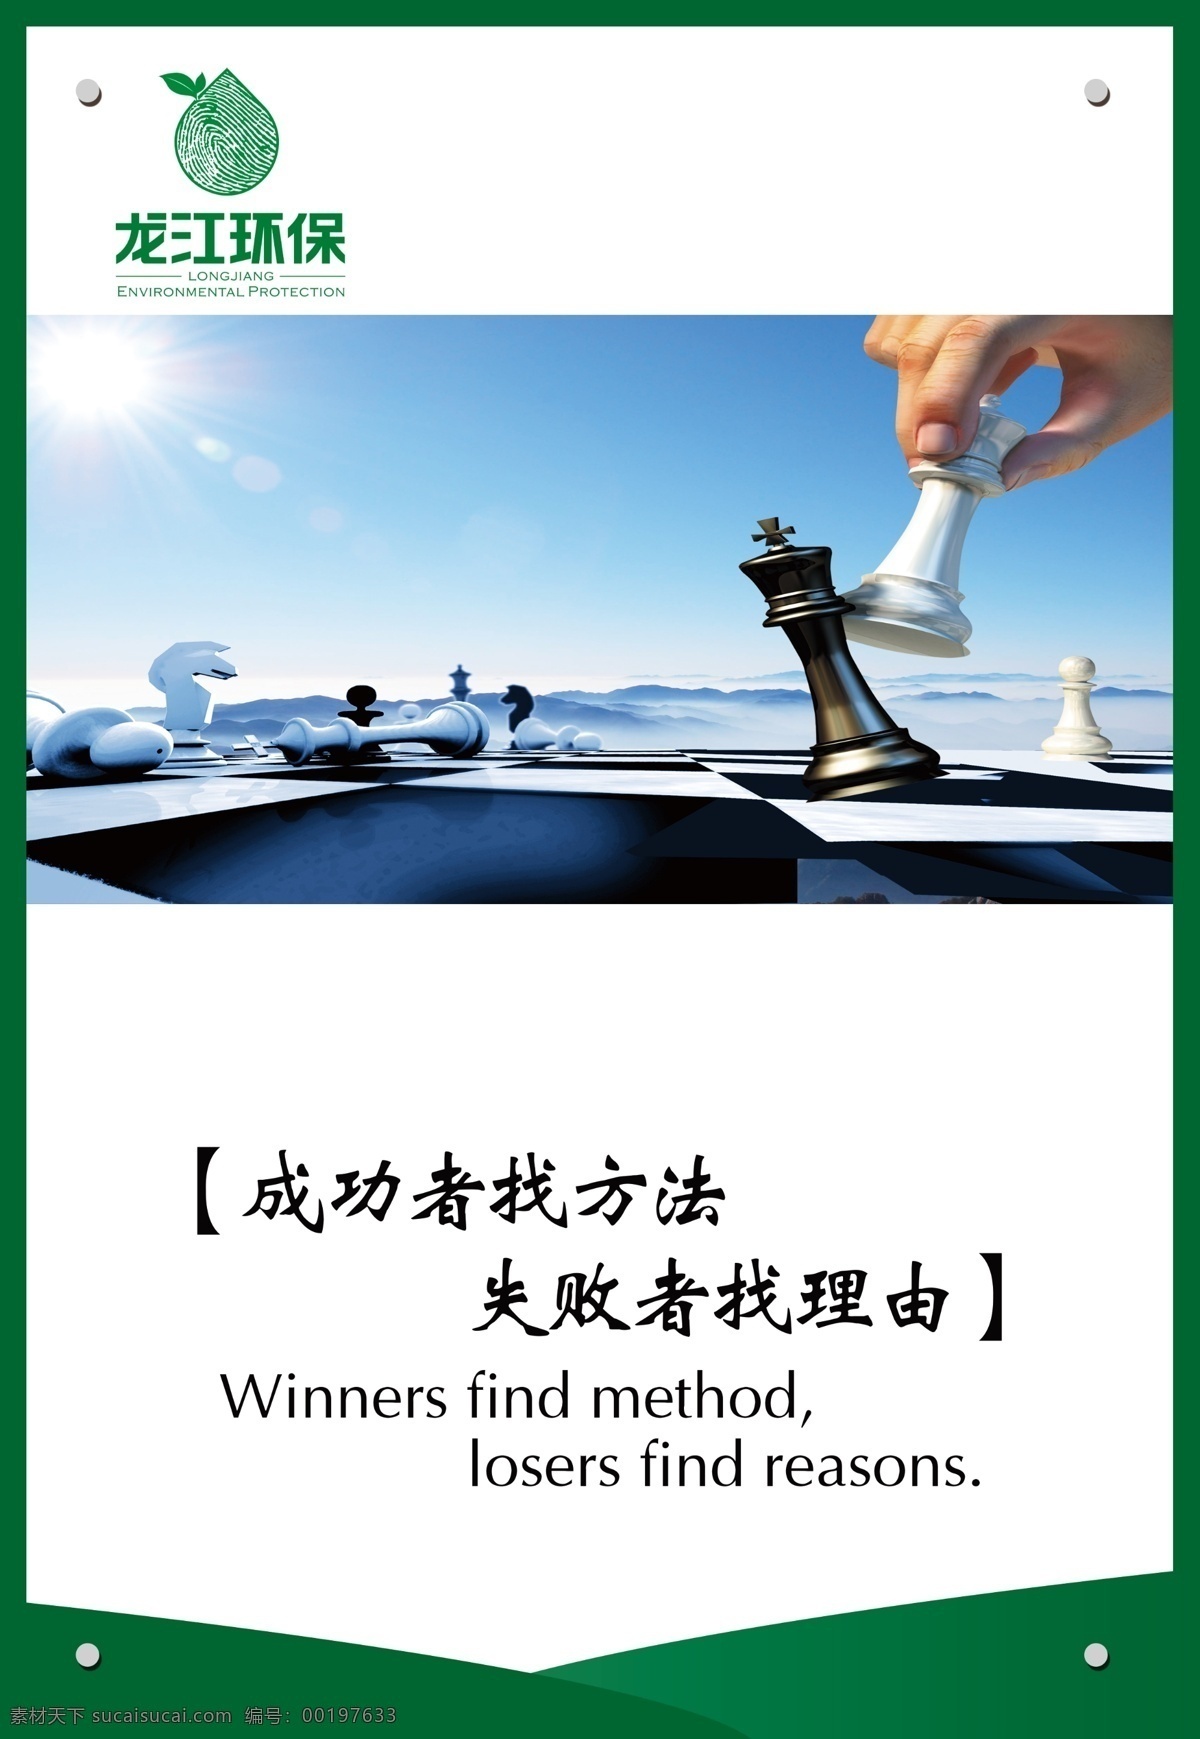 成功者找方法 失败者找理由 国际象棋 象棋 展板 企业文化 文化 企业形象 龙江环保 企业标语